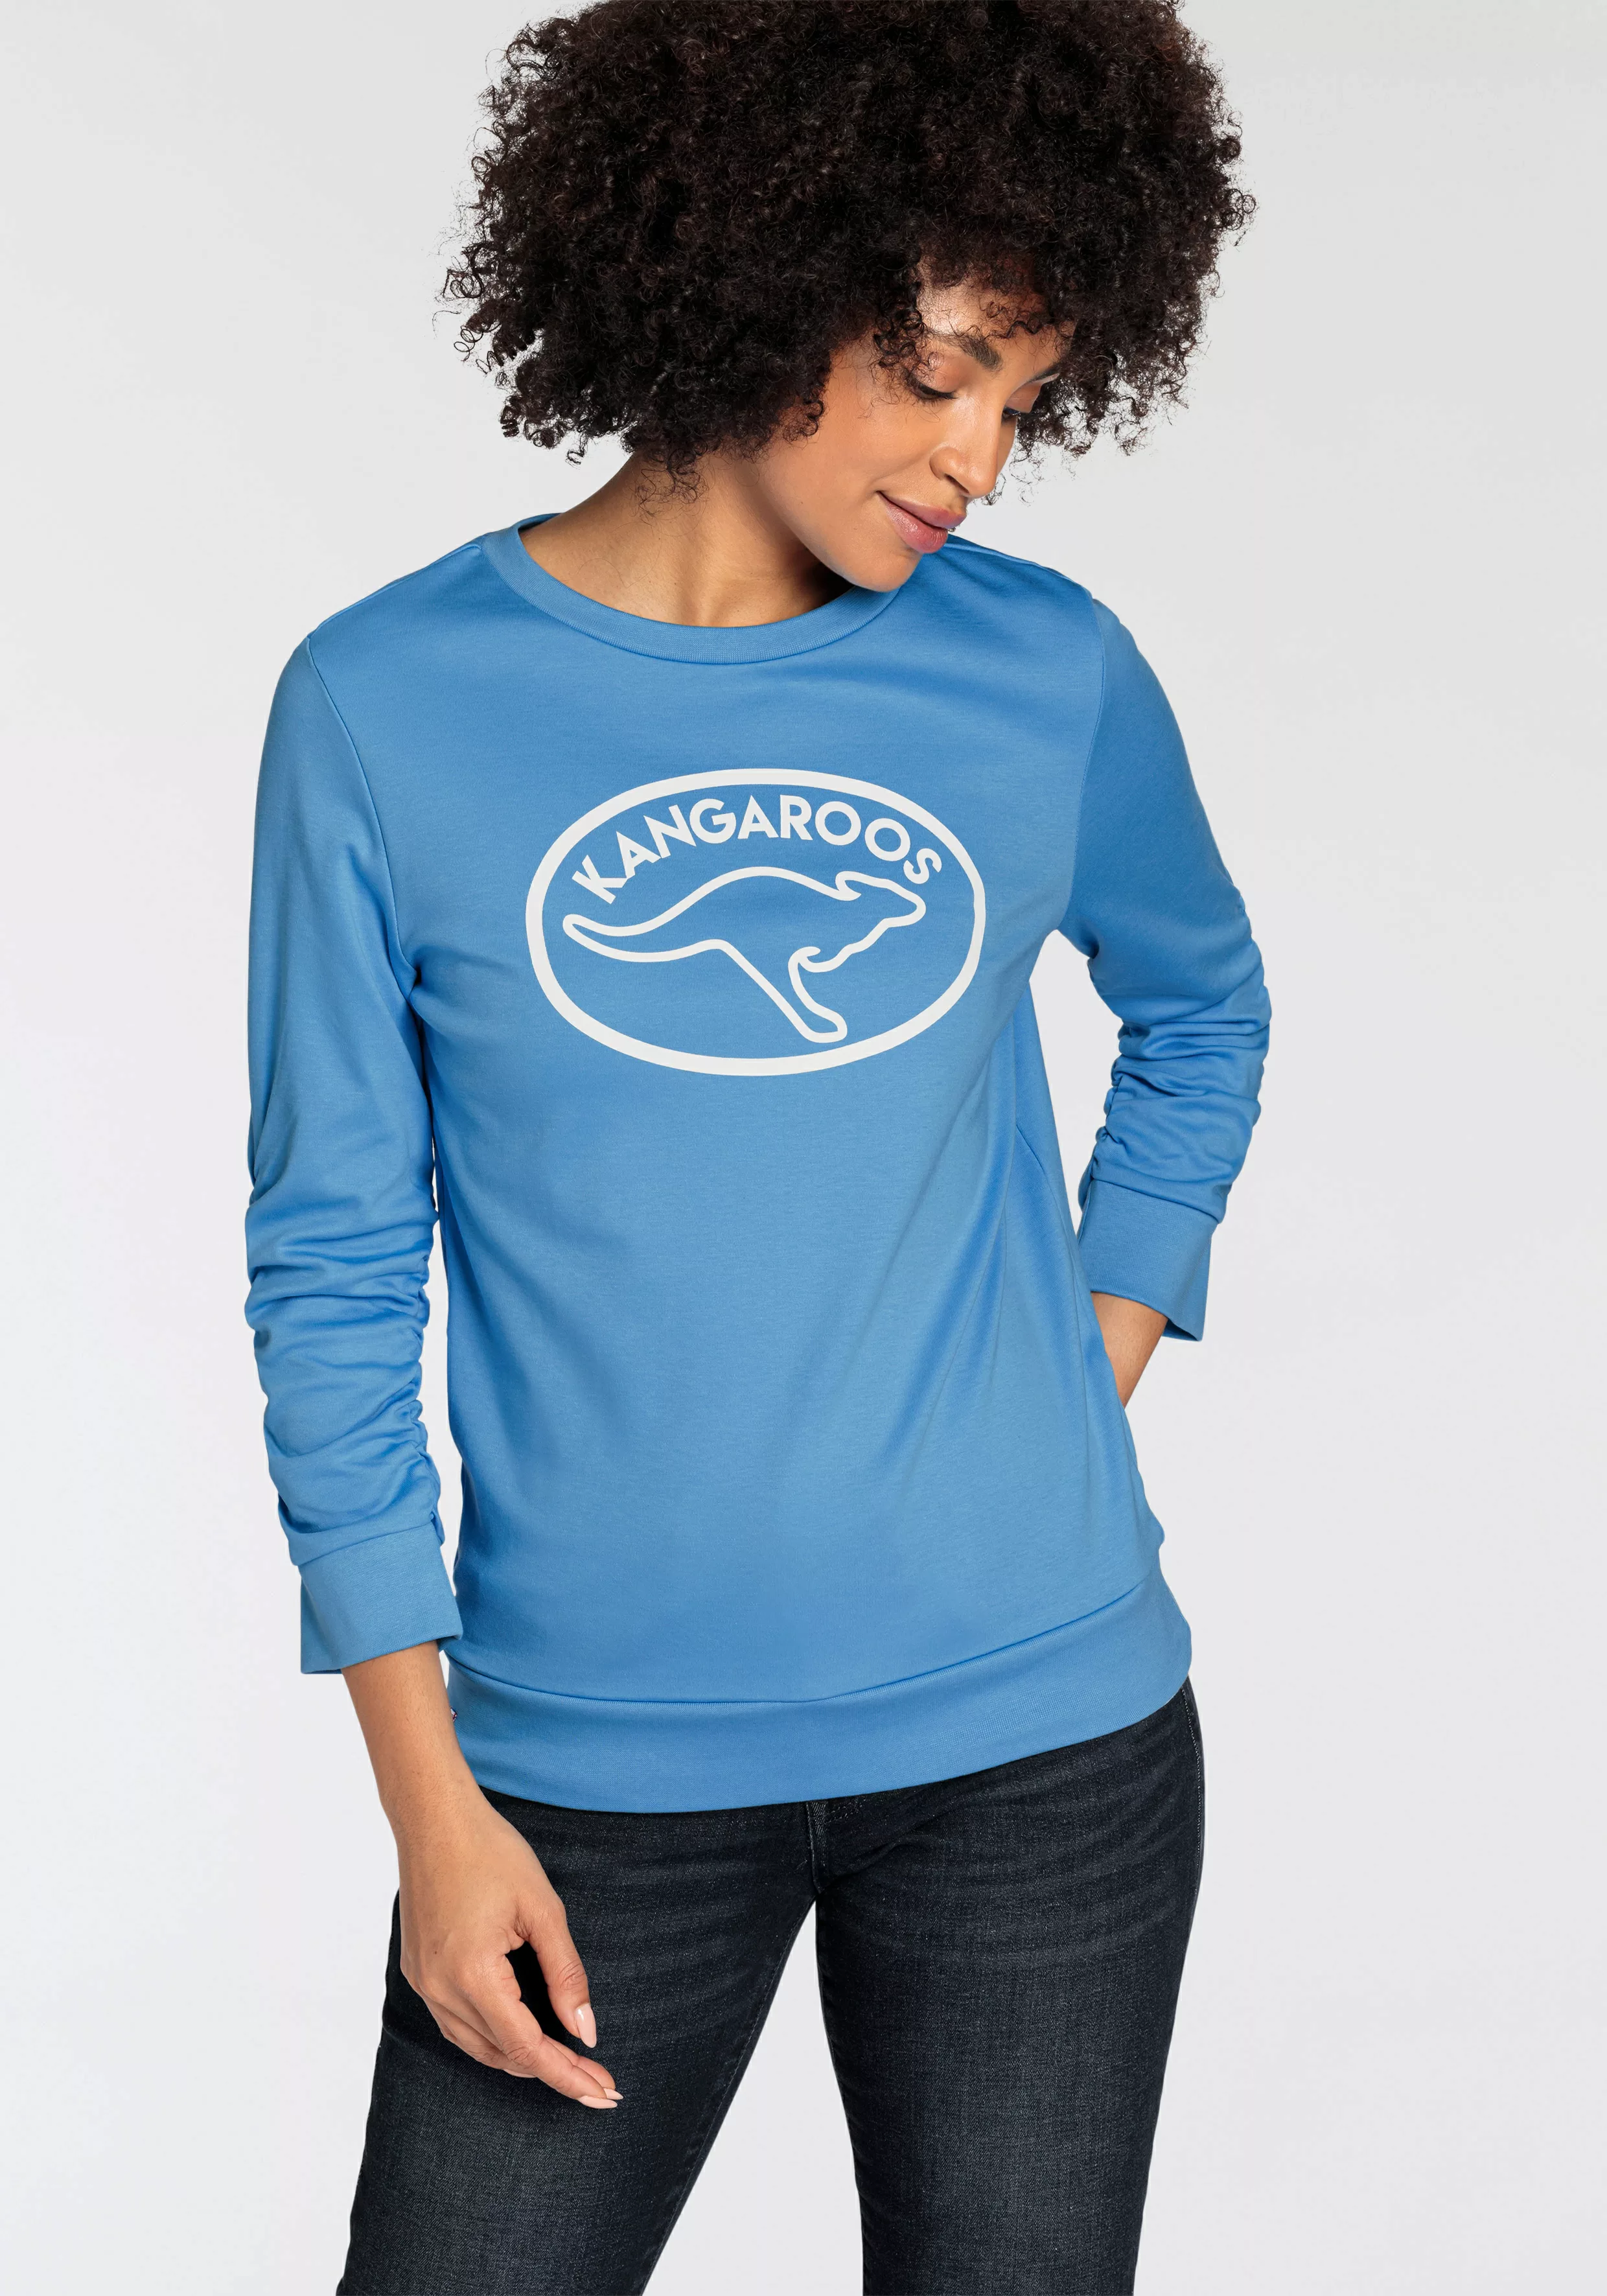 KangaROOS Sweatshirt mit großem Label Print - NEUE-KOLLEKTION günstig online kaufen